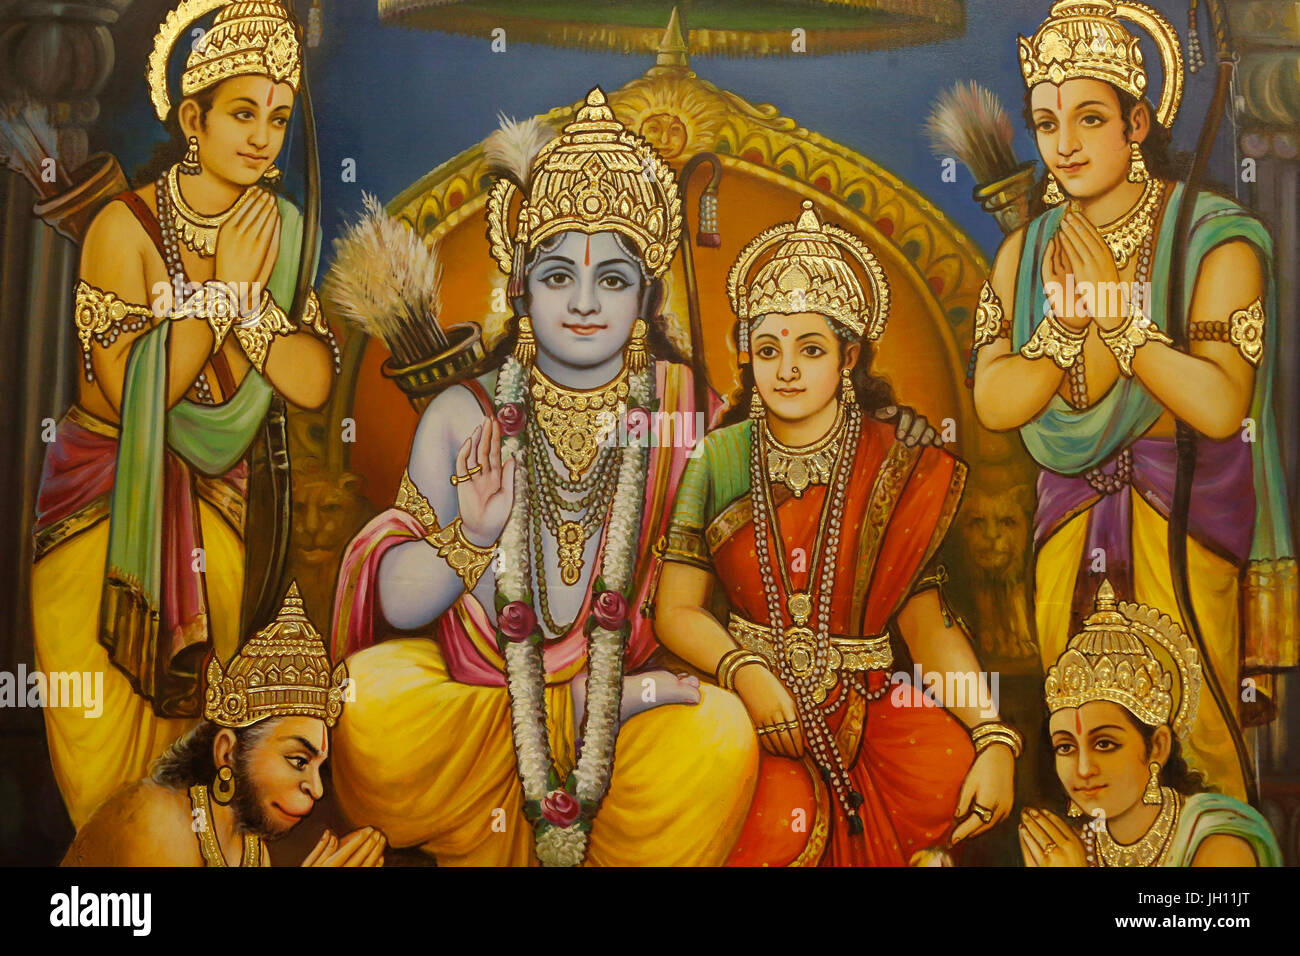 Jalaram Prathna hindu-Tempel, Leicester. Unter freiem Himmel.  RAM, Sita mit Lakshman Ram es Recht und Hanuman kniend und Anhänger Vereinigtes Königreich. Stockfoto